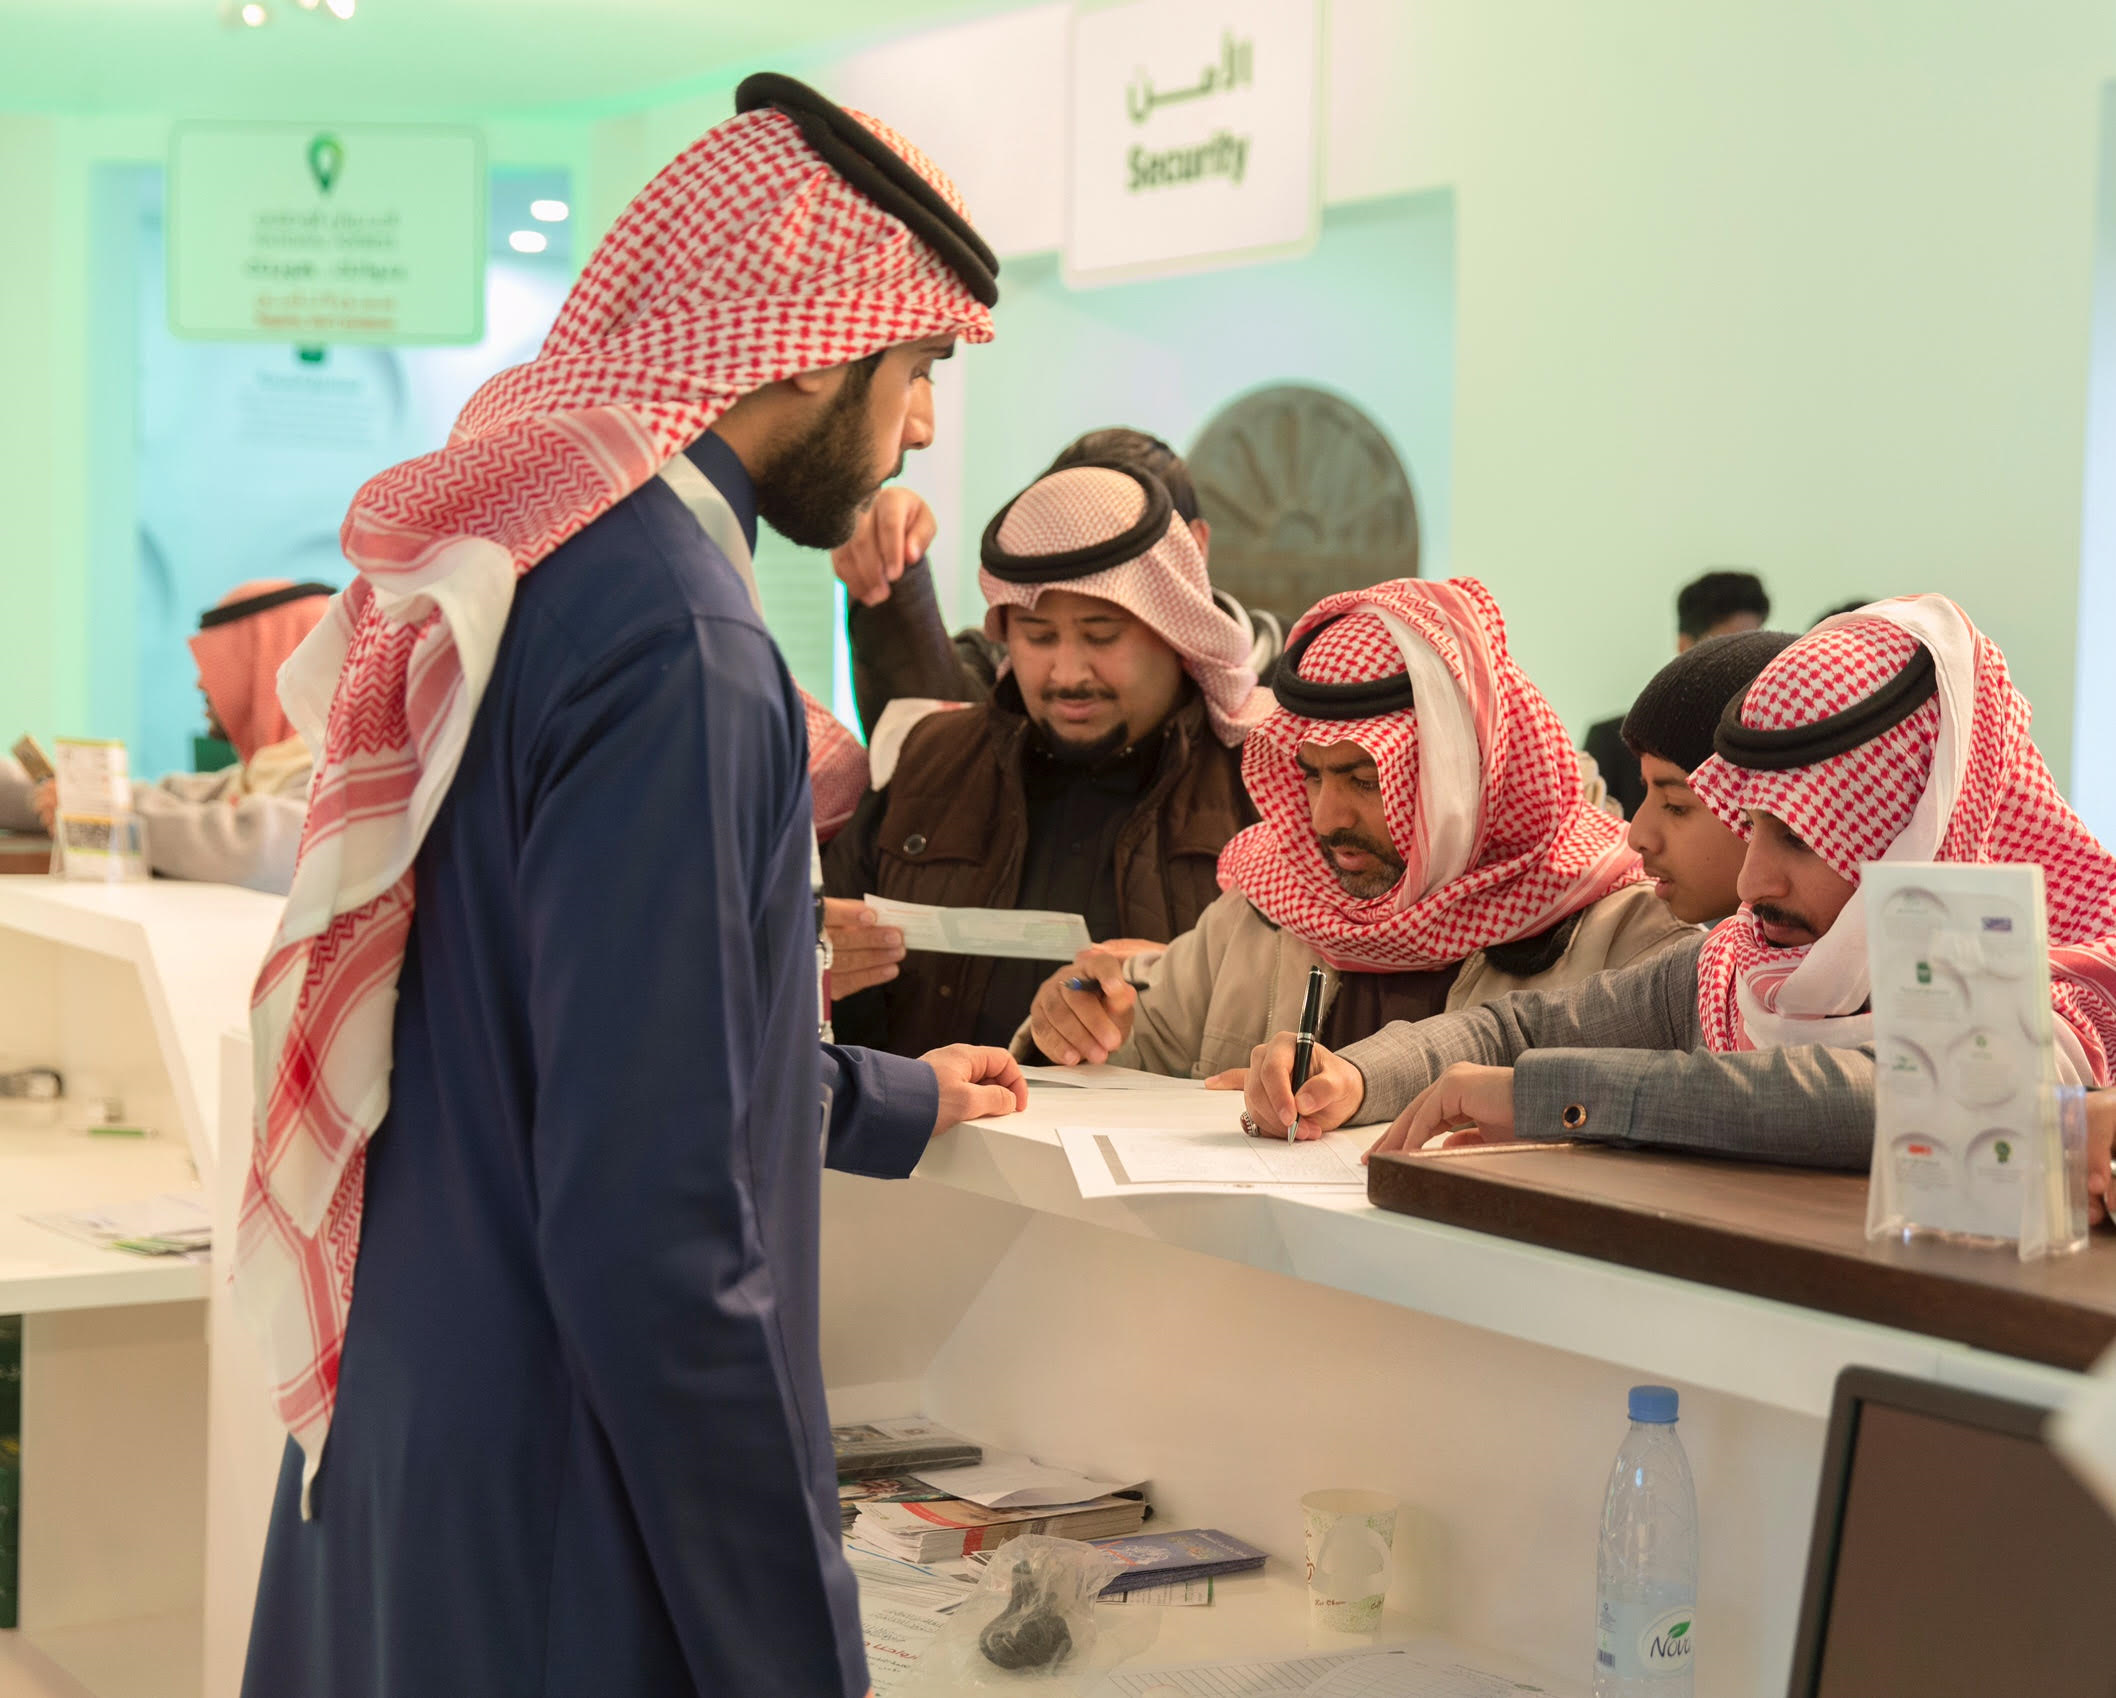  البريد السعودي يشارك في مهرجان الجنادرية31 بحزمة من الخدمات المتنوعة